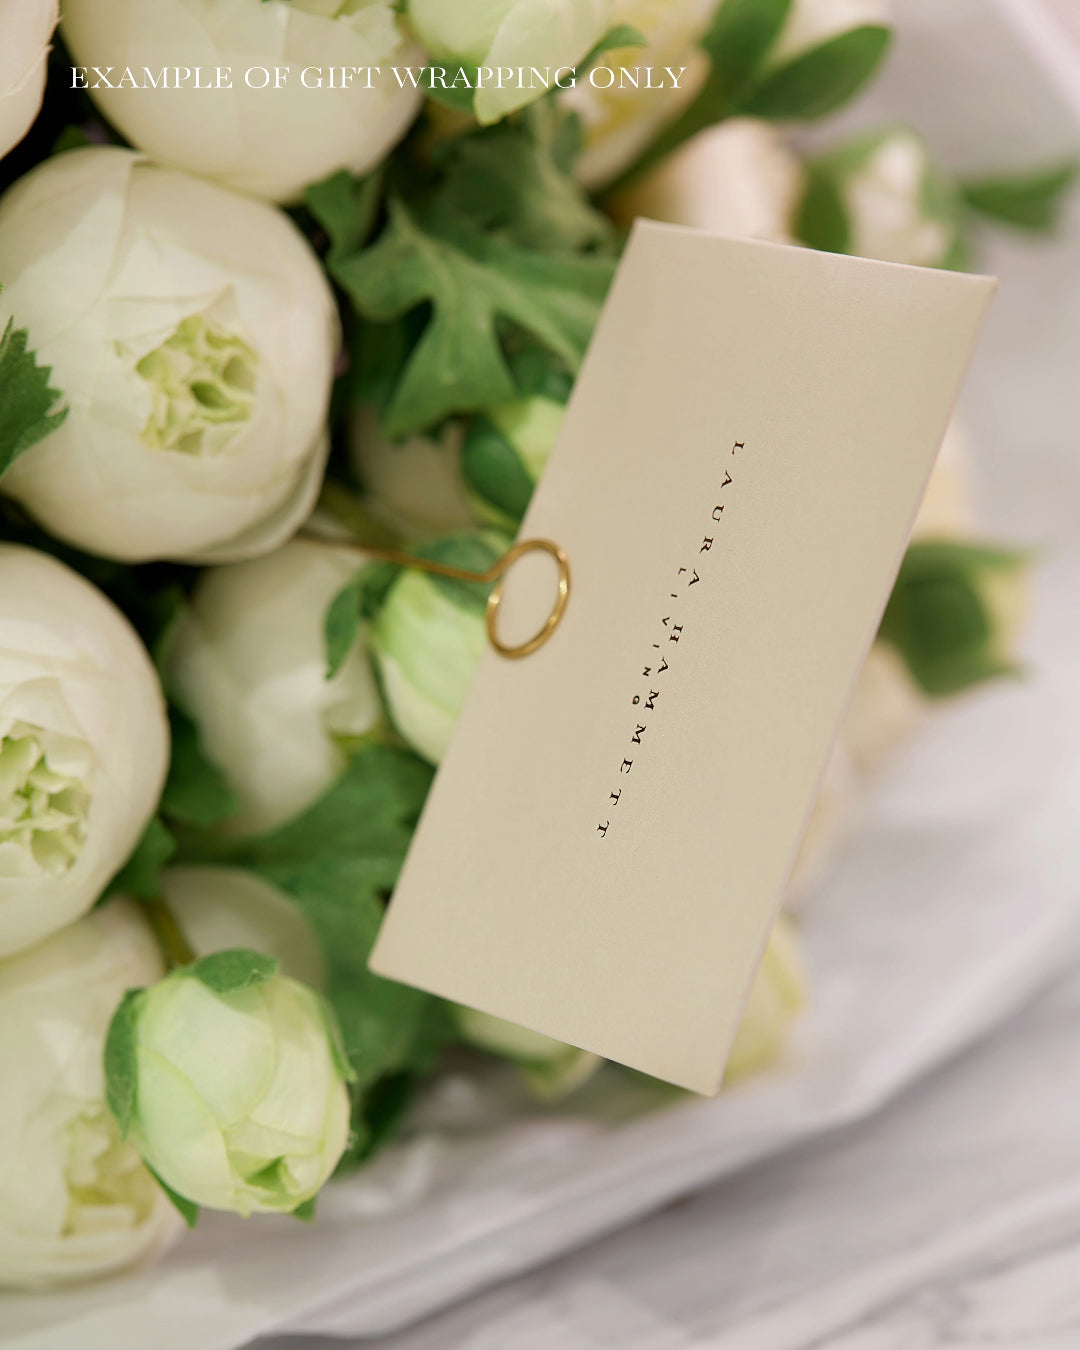 White Hydrangea Bouquet - Medium